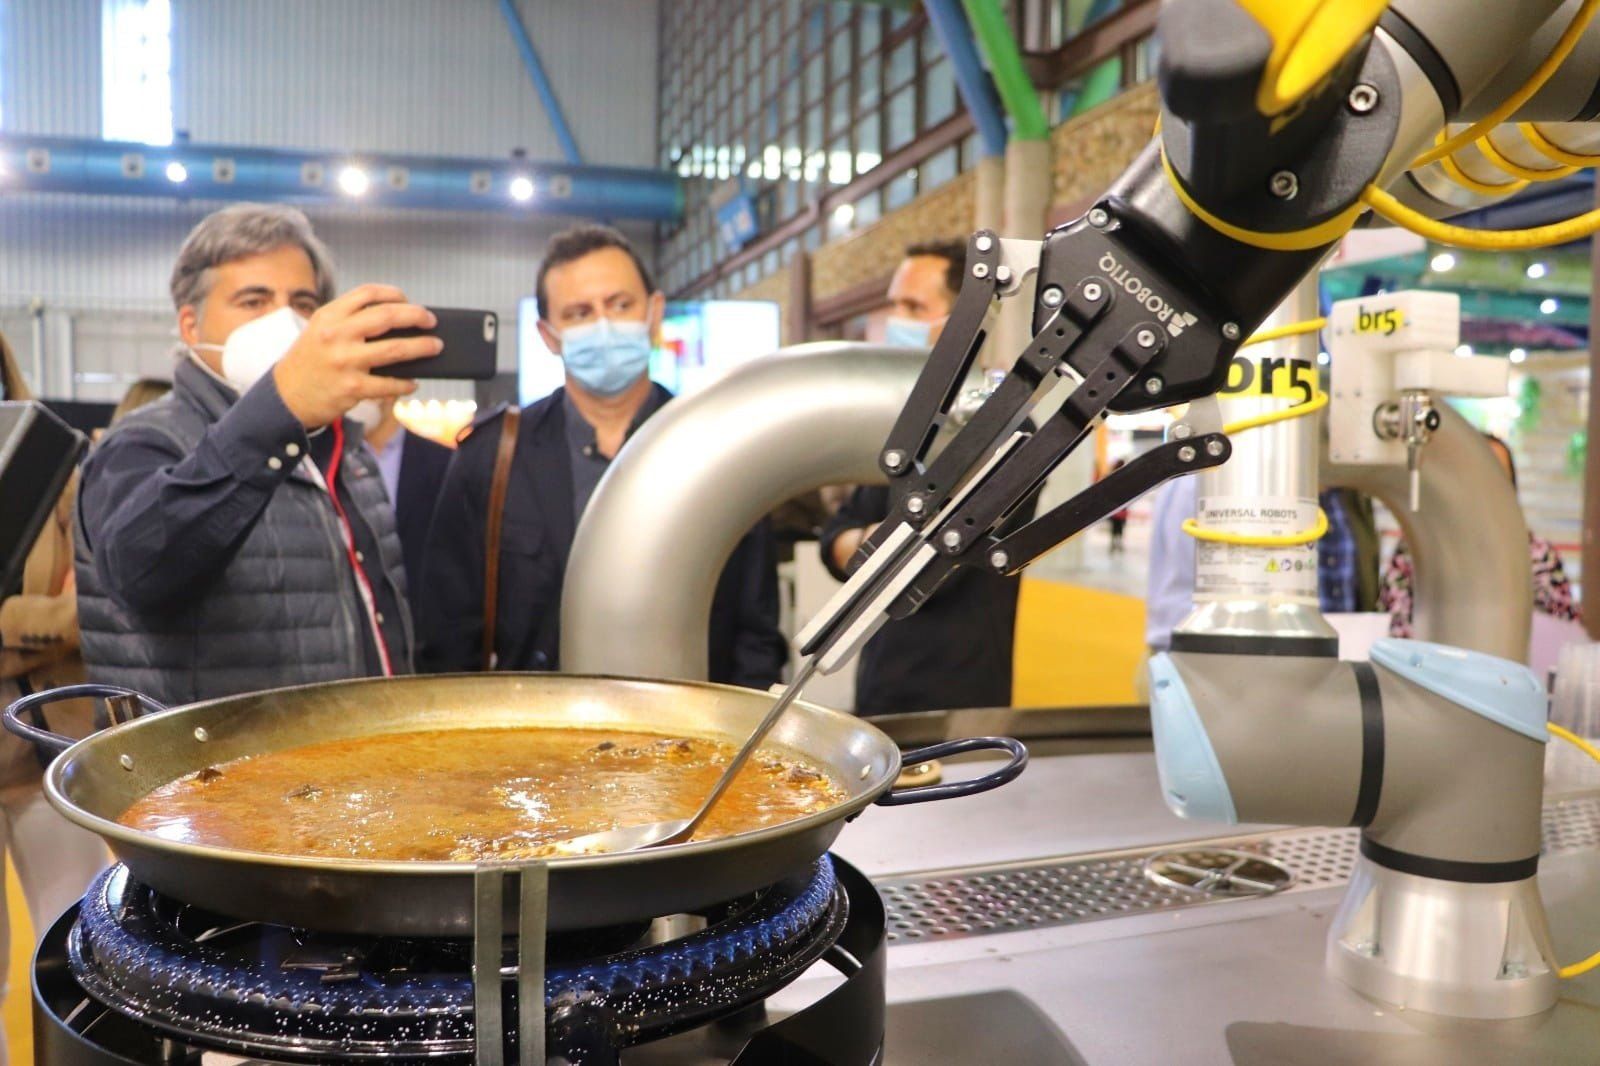 El robot capaz de cocinar una paella